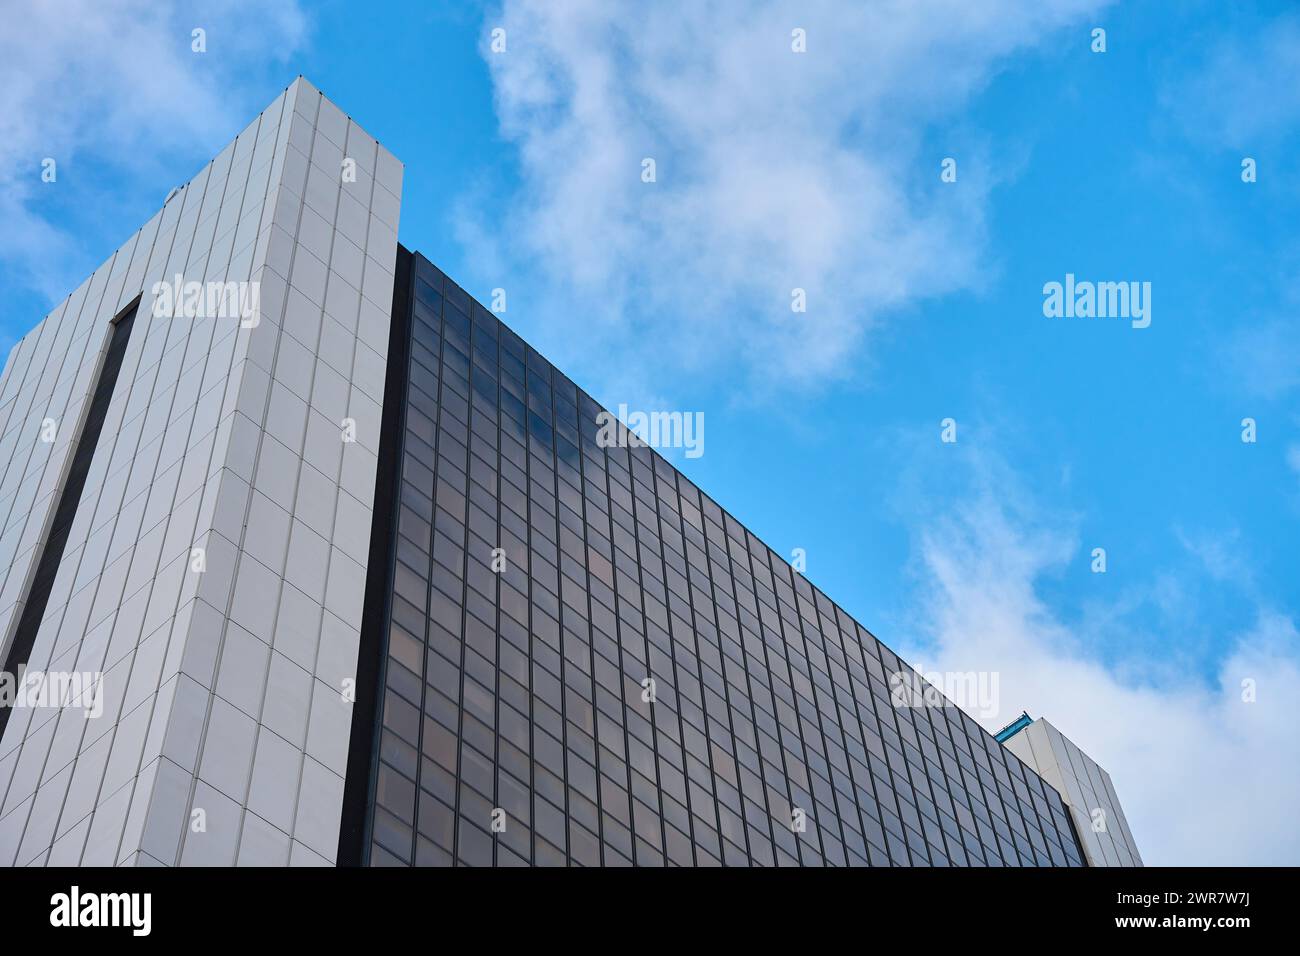 Hoch aufragendes, modernes Bürogebäude in der Stadt vor bewölktem Himmel, moderne Architektur mit Glasfenstern. Stockfoto